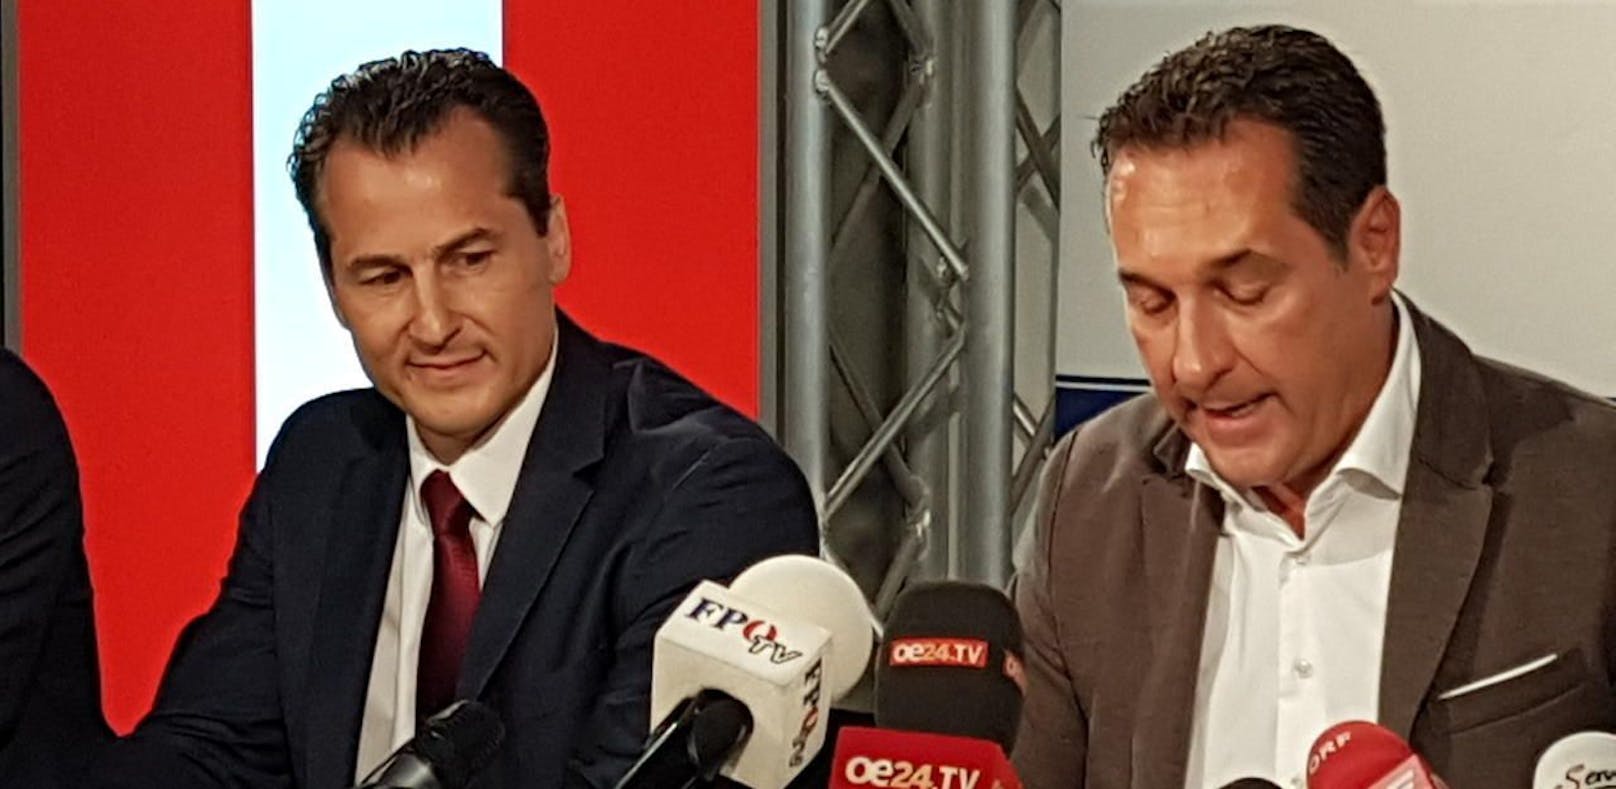 Robert Lugar (Ex-Team Stronach) wechselt wieder zurück zur FPÖ von Heinz-Christian Strache (r.)